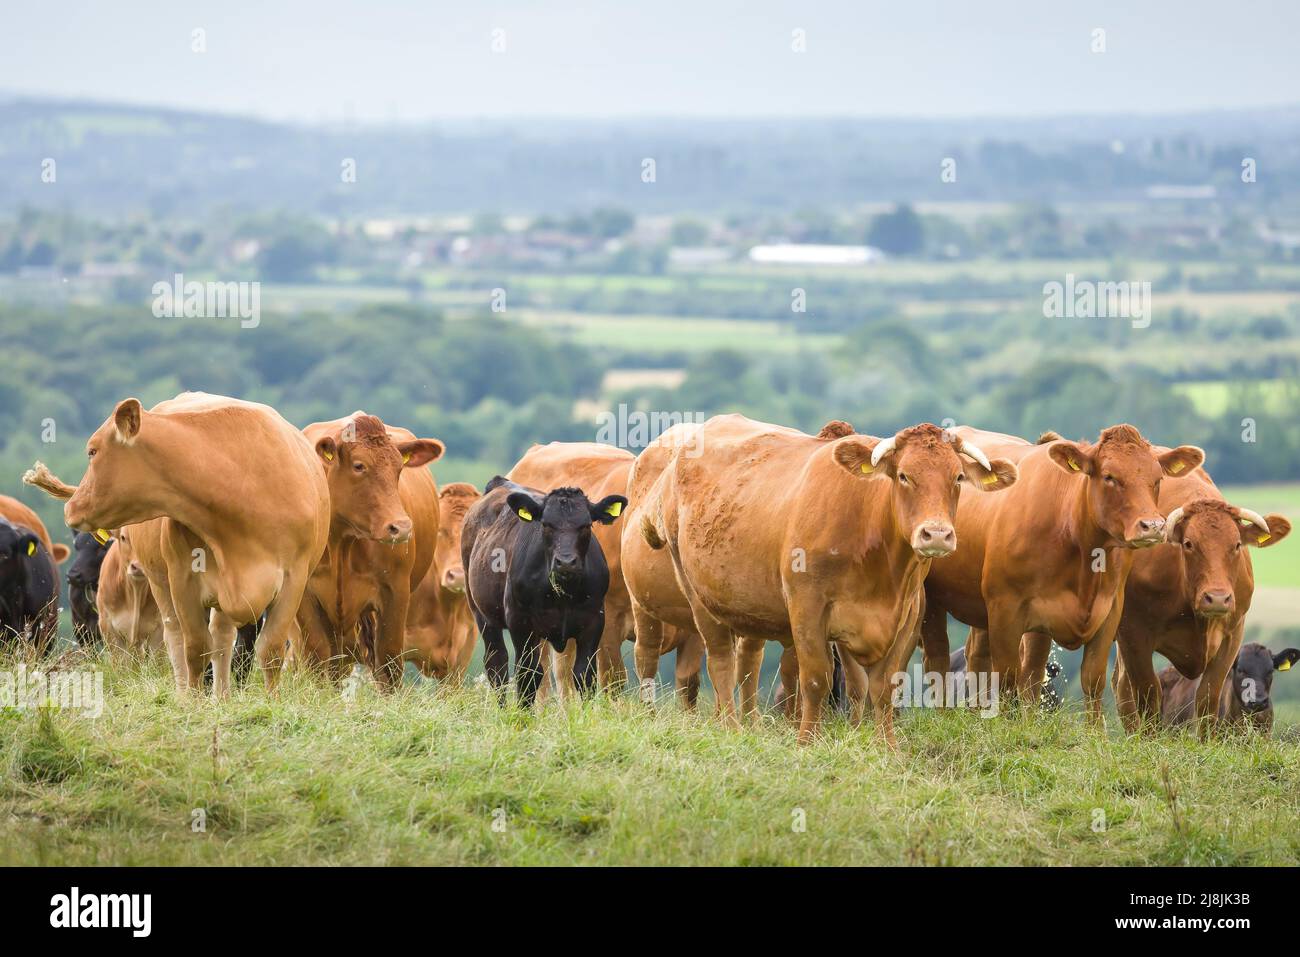 Rebaño de vacas, ganado vacuno Hereford con terneros. Ganado en un campo en una granja. Aylesbury Vale, Buckinghamshire, Reino Unido Foto de stock